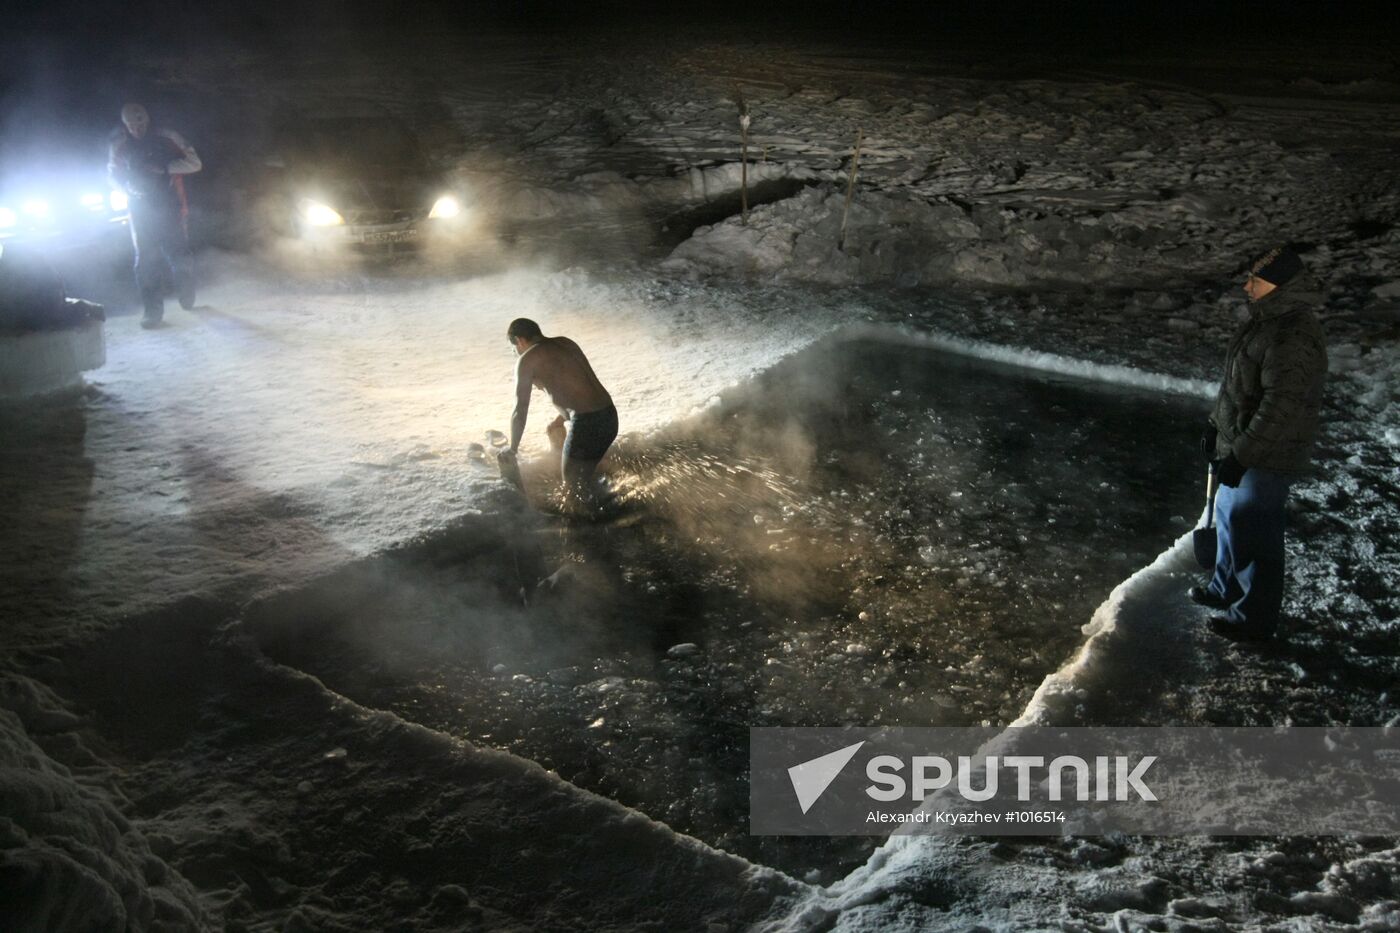 Epiphany bathing in Novosibirsk